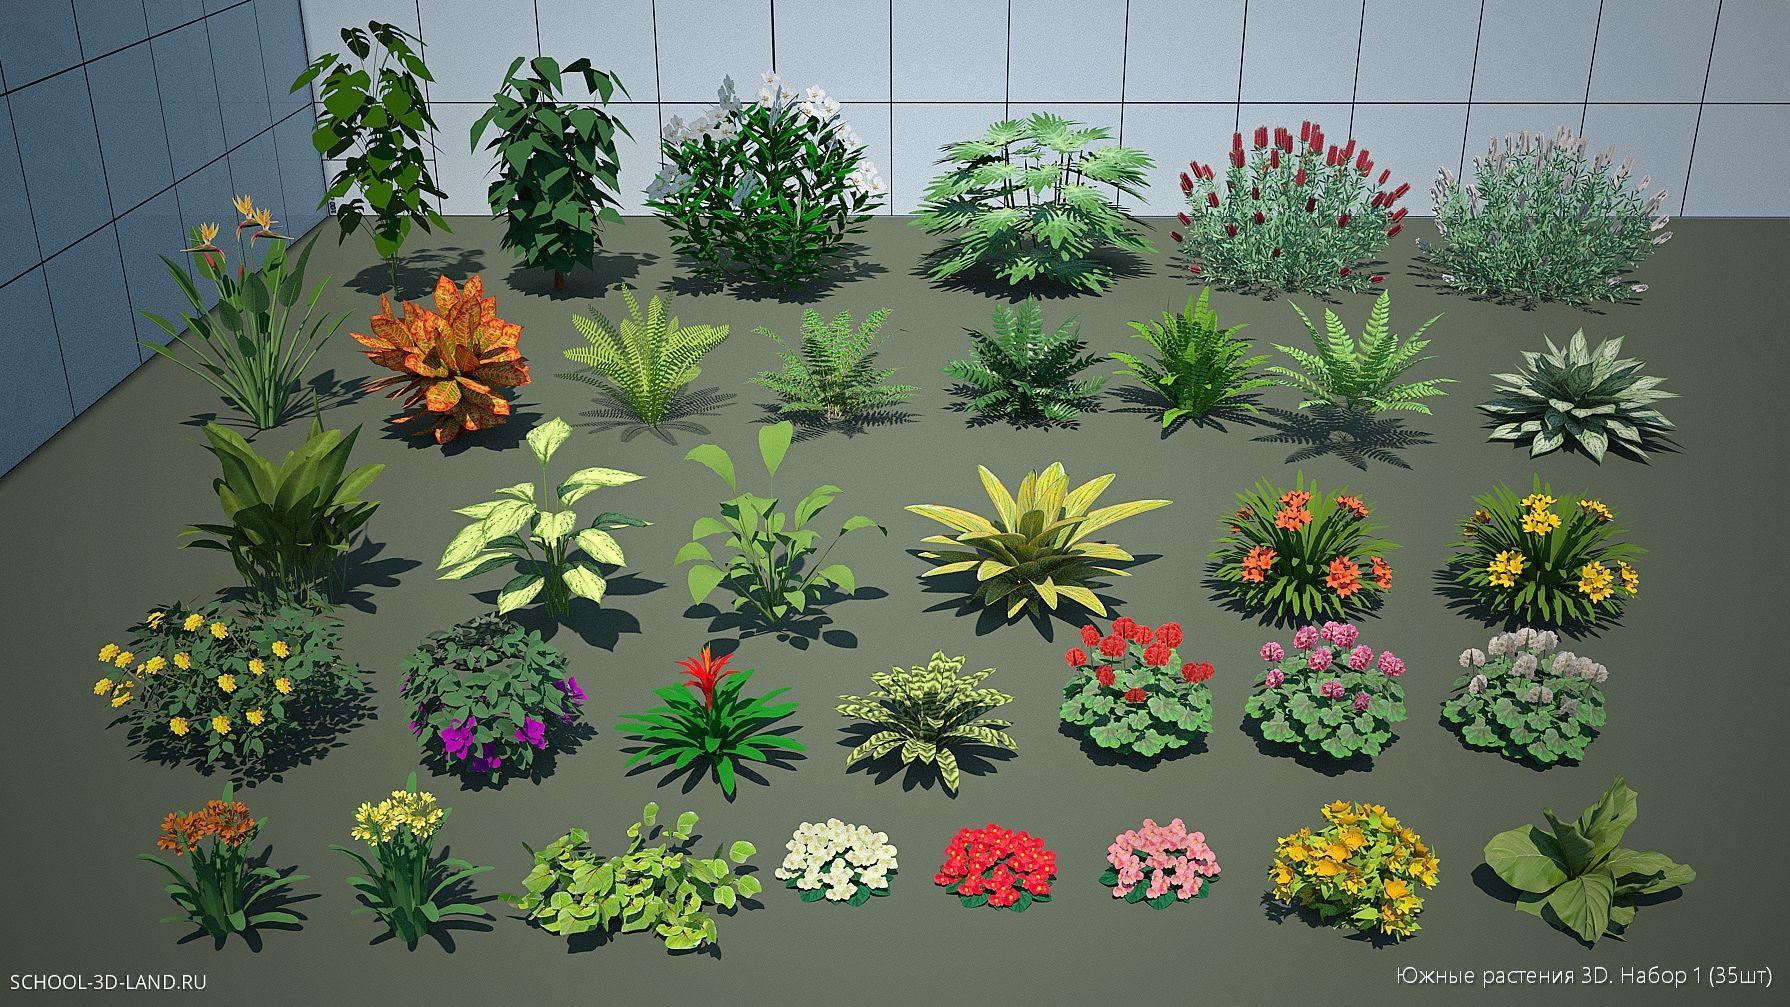 Южные растения 3D. Набор 1 (35шт)